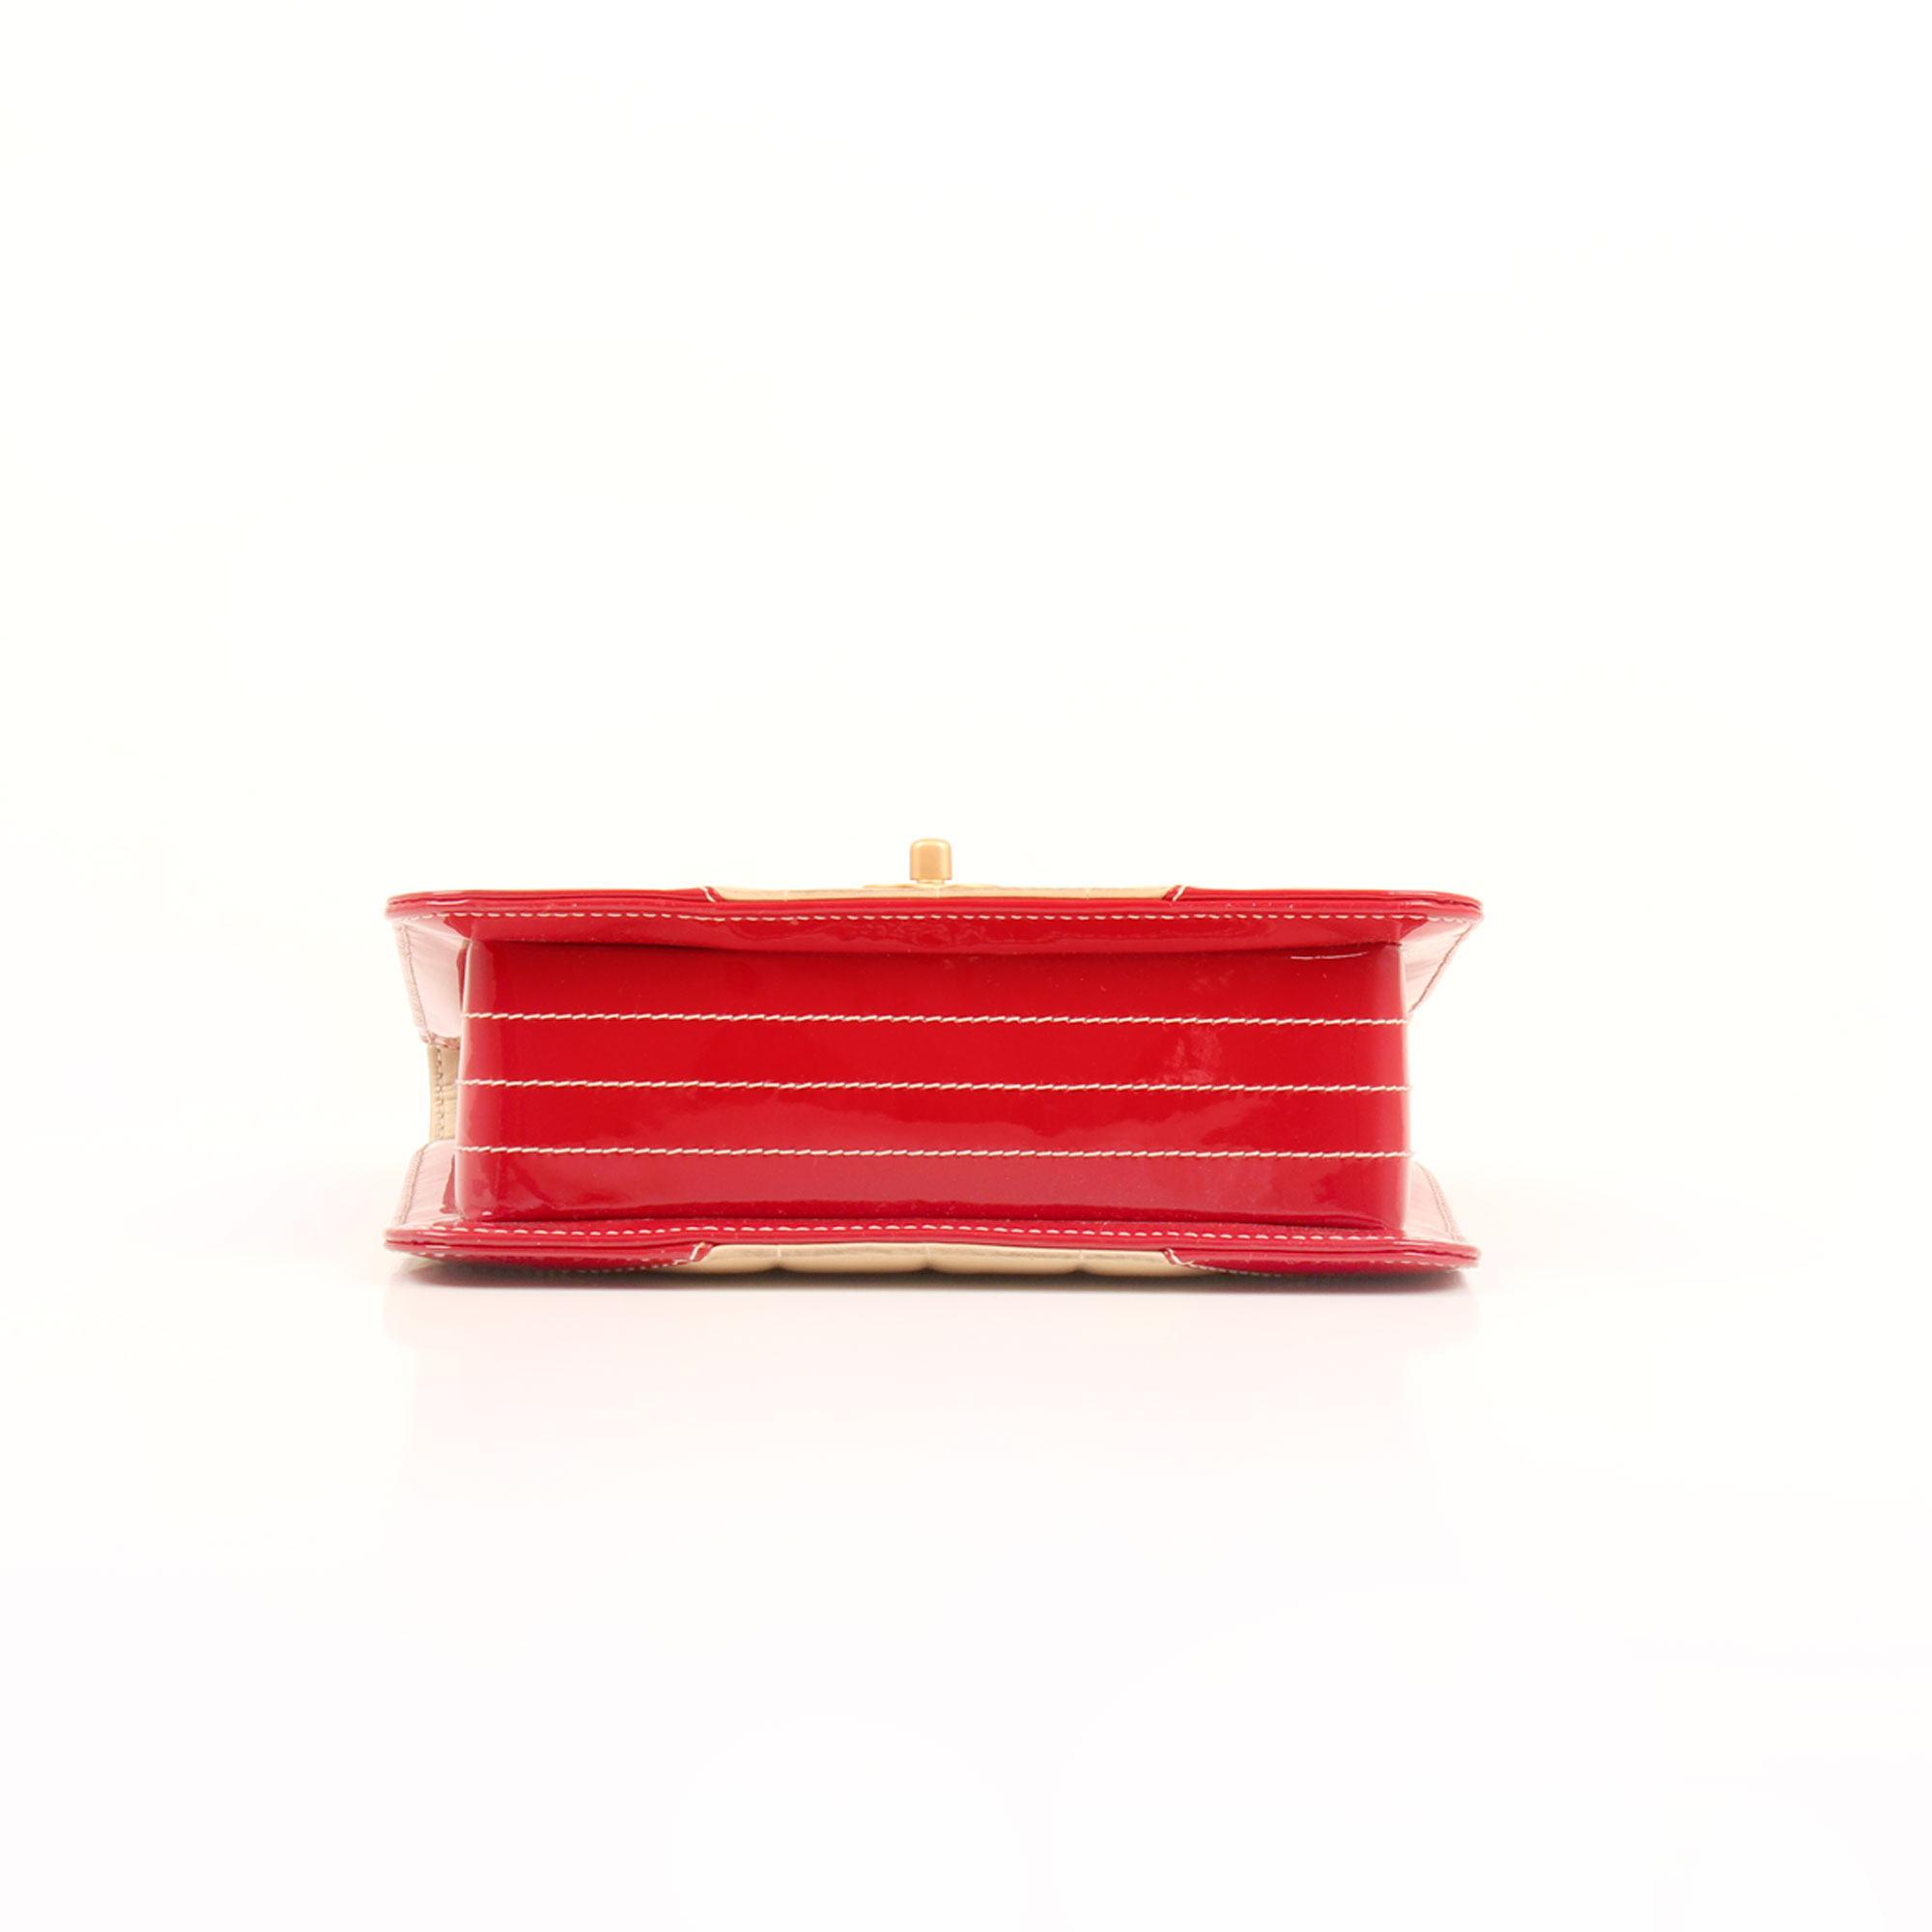 Imagen de la base del bolso chanel bicolor choco bar solapa unica